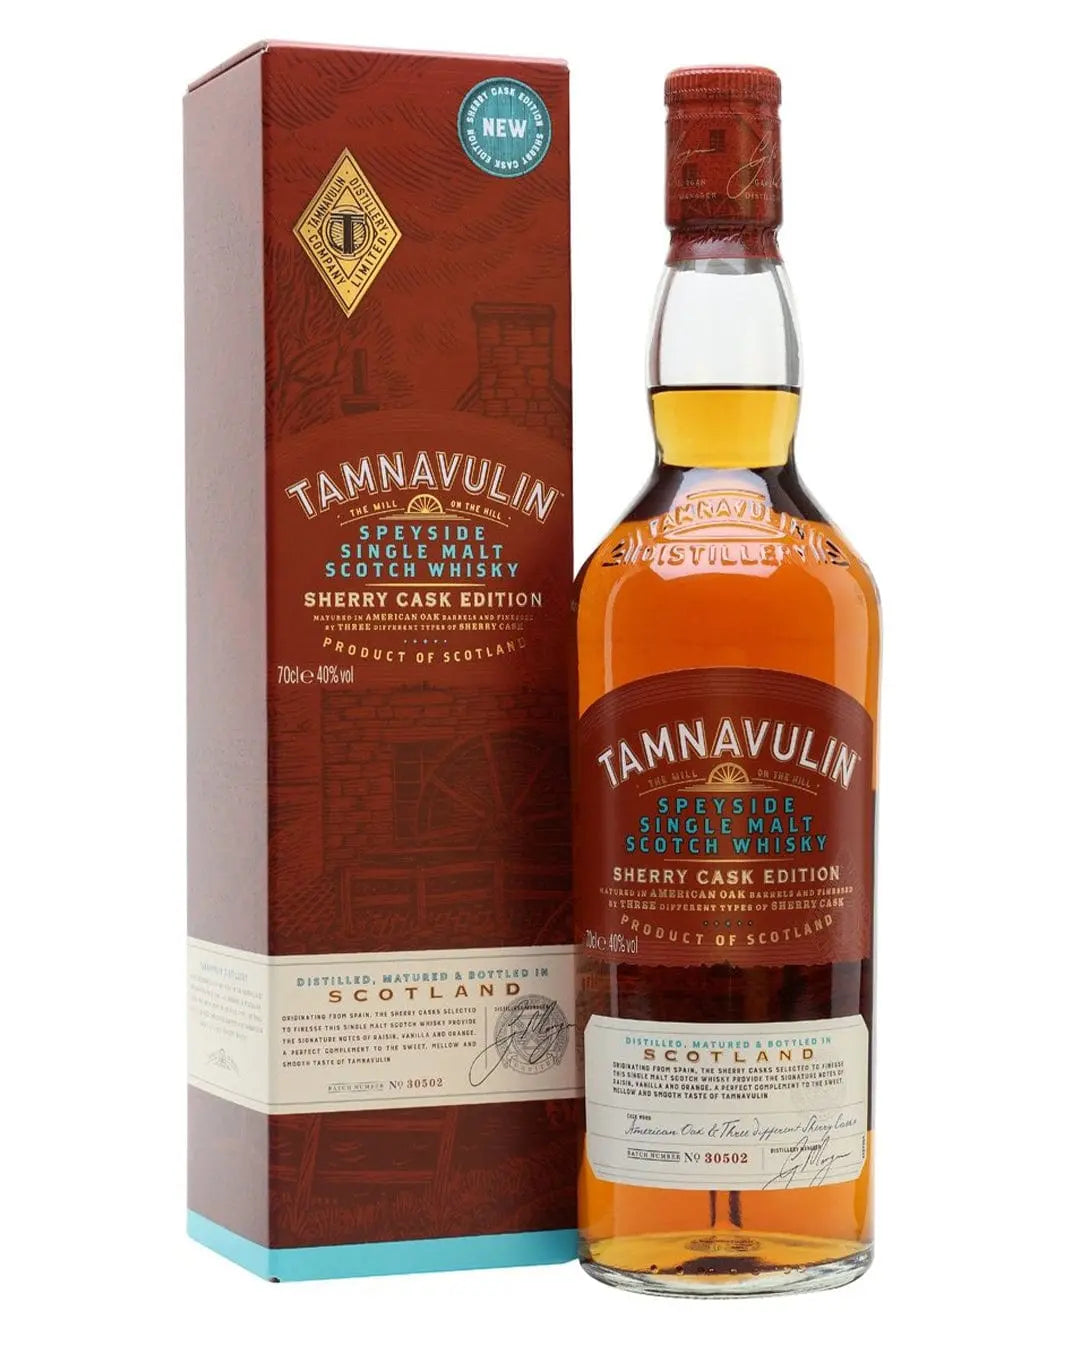 Tamnavulin Speyside Single Malt Scotch Sherry Cask Edition Whisky, 70 cl Whisky 5013967015401